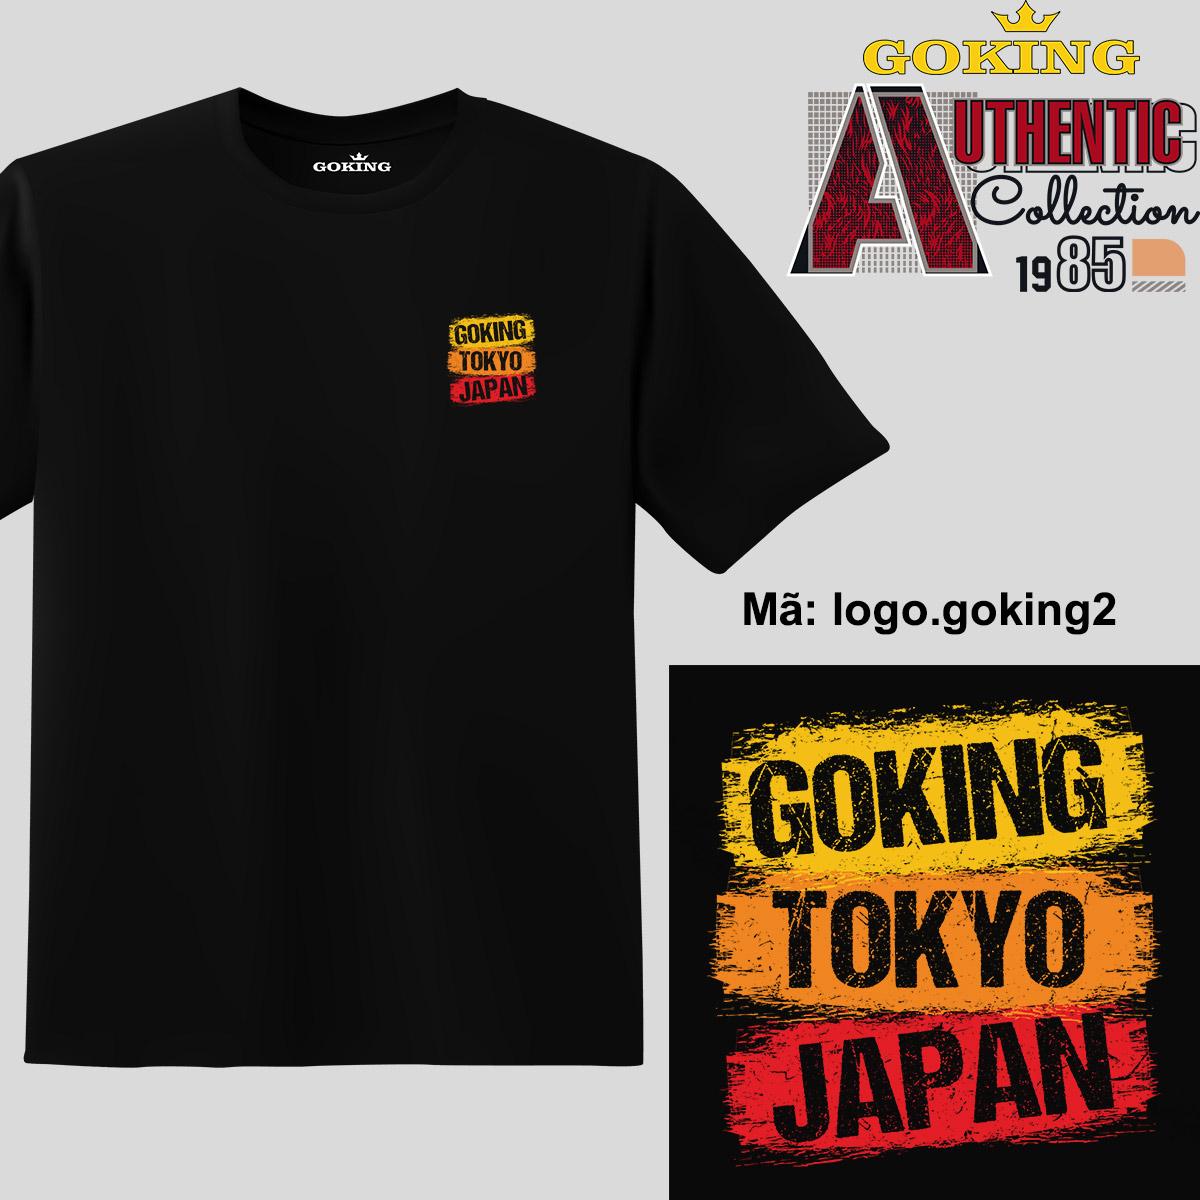 GOKING-TOKYO-JAPAN, mã logo-goking2. Trở nên cá tính và ấn tượng cùng chiếc áo phông Goking cho nam nữ trẻ em. Áo phông hàng hiệu cho cặp đôi, gia đình, đội nhóm